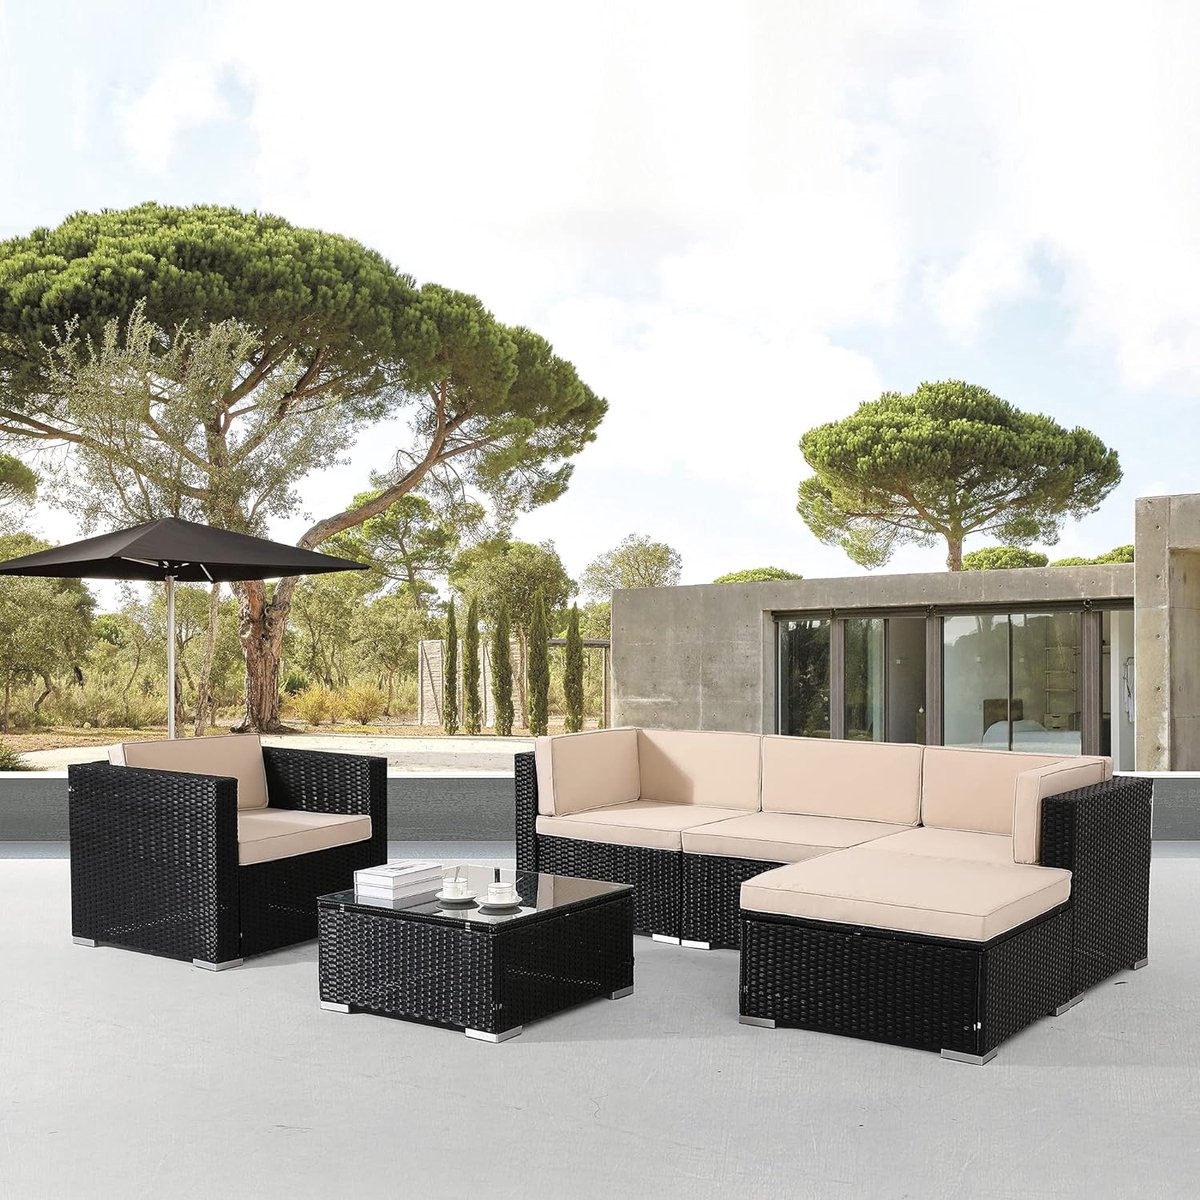 Arebos Poly rotan tuinmeubelen Lounge | incl. zitkussen | met stoel | 5 personen | UV-bestendig polyrotan vlechtwerk | tafel met glasplaat | vrij te combineren | zwart